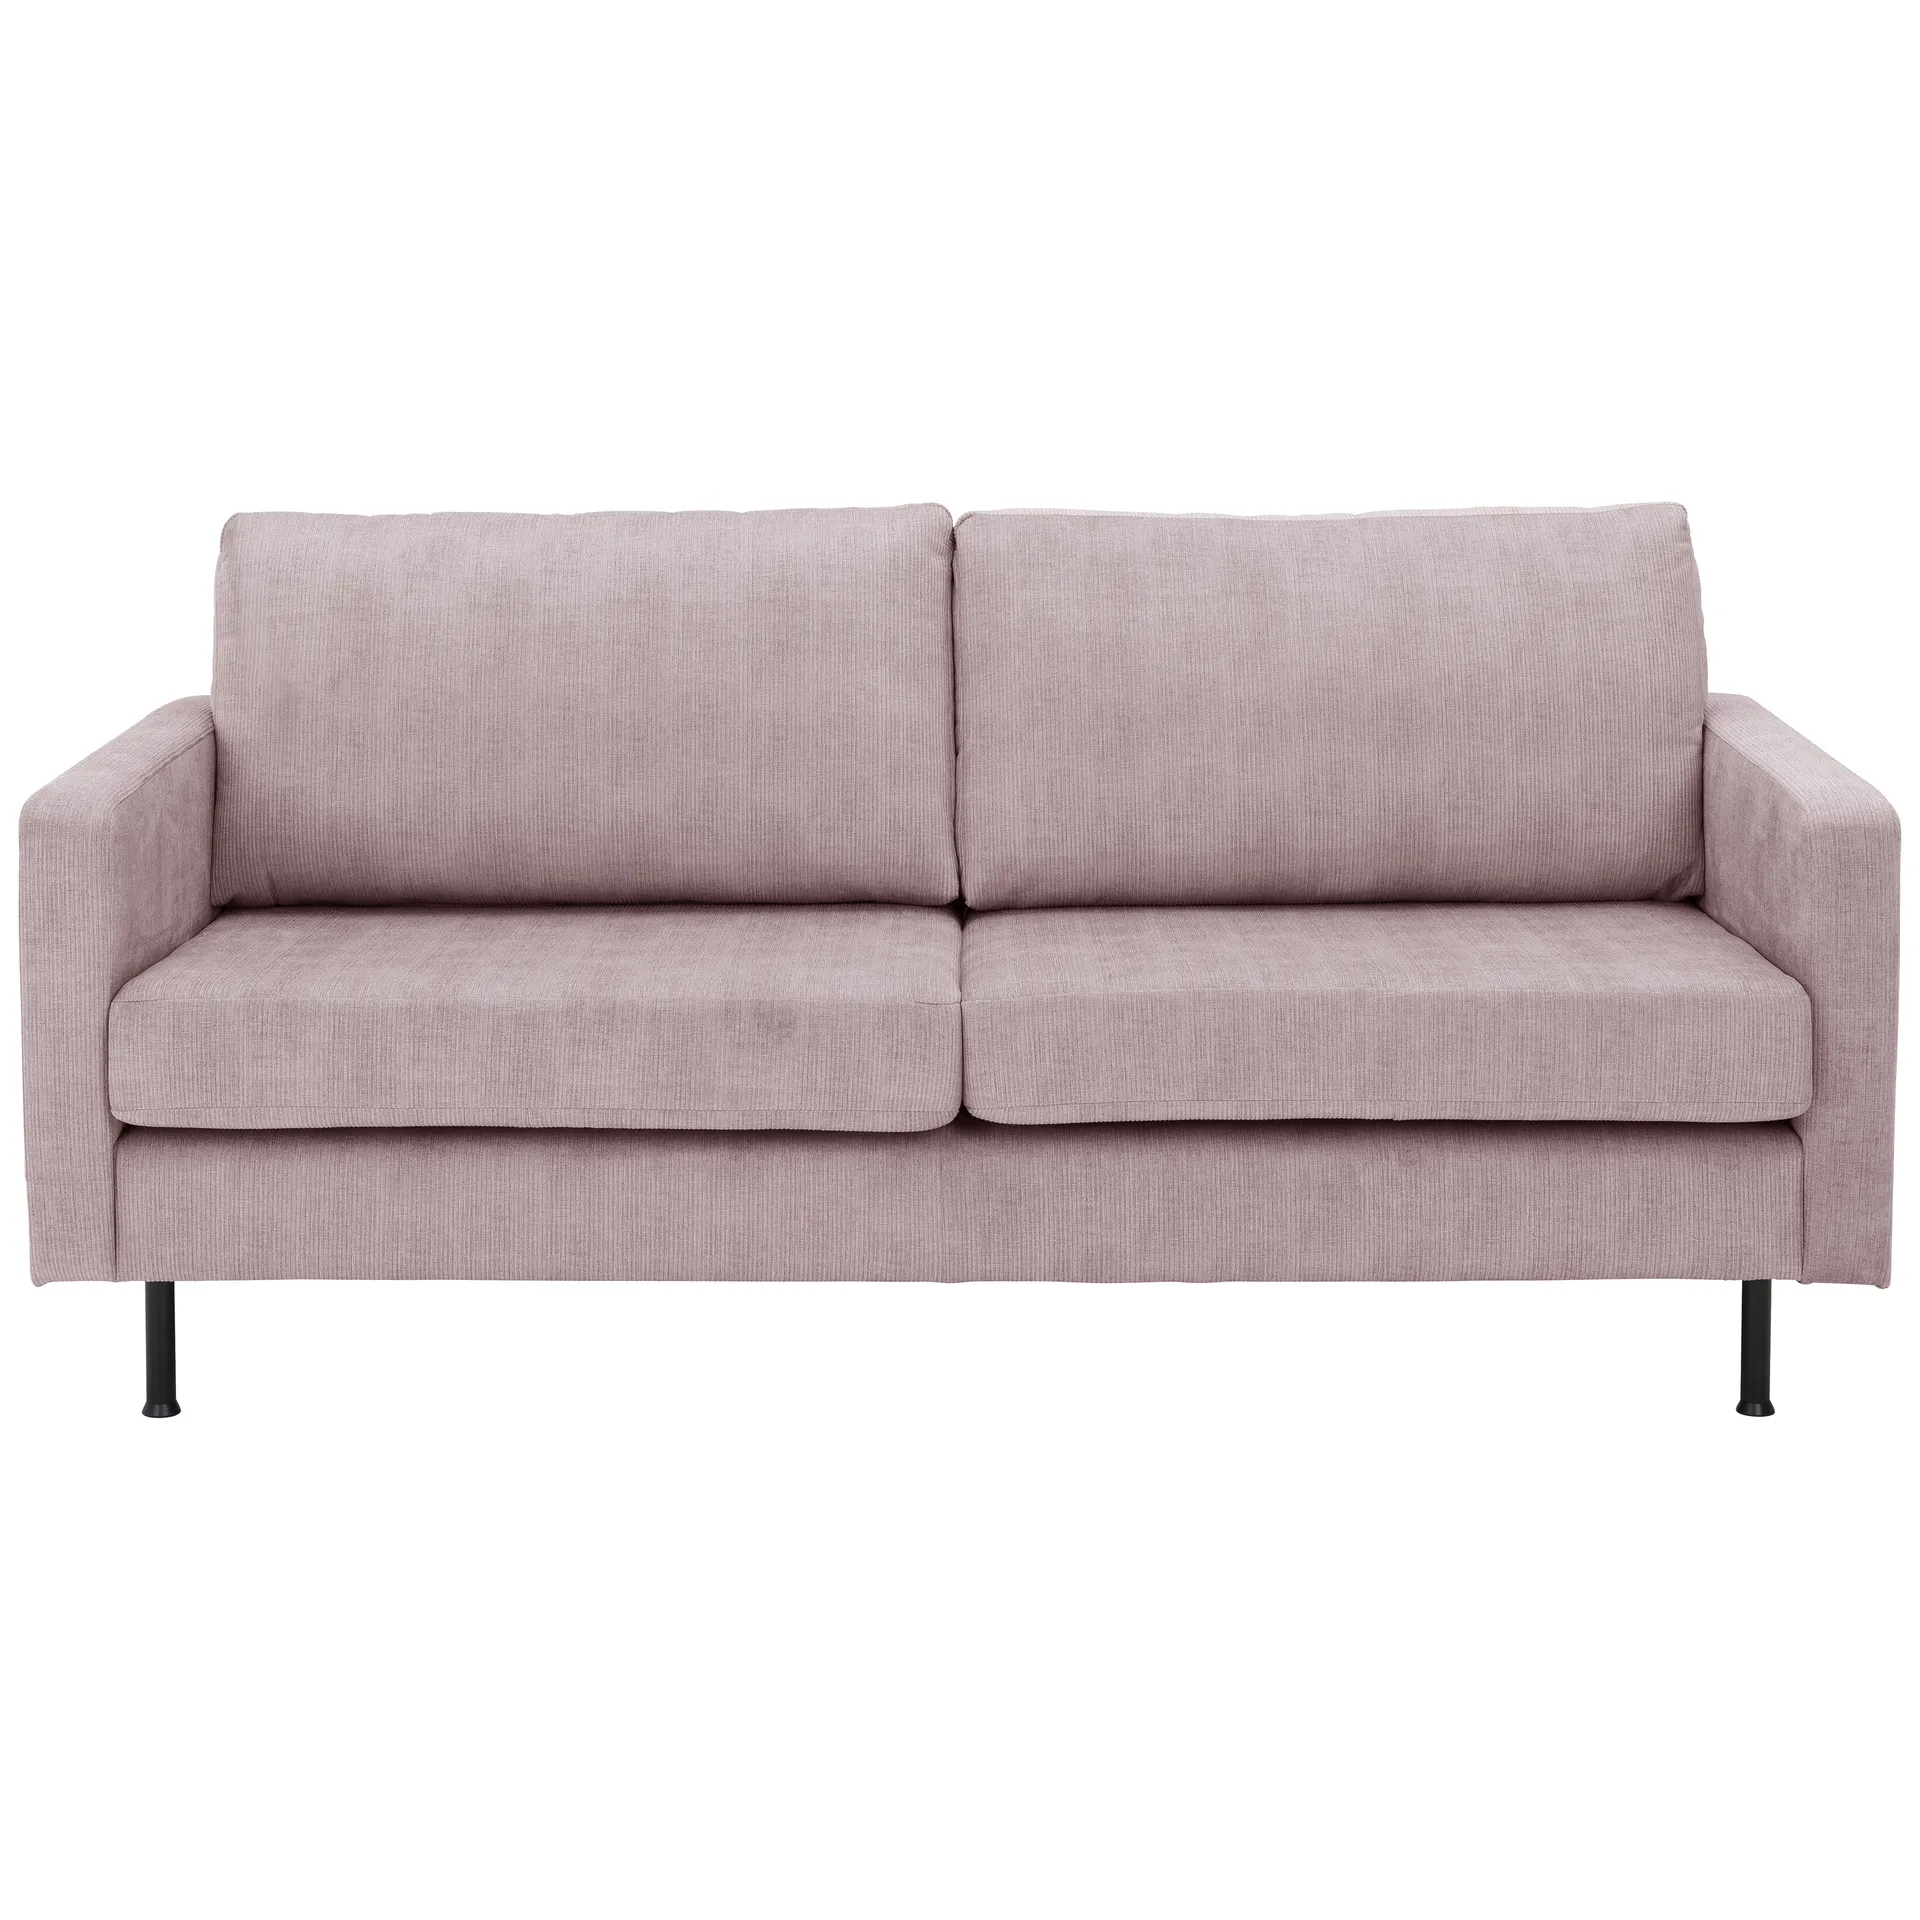 2,5er Sofa mit zwei armlehnen mit losen sitz und rückenkissen in rose stoff